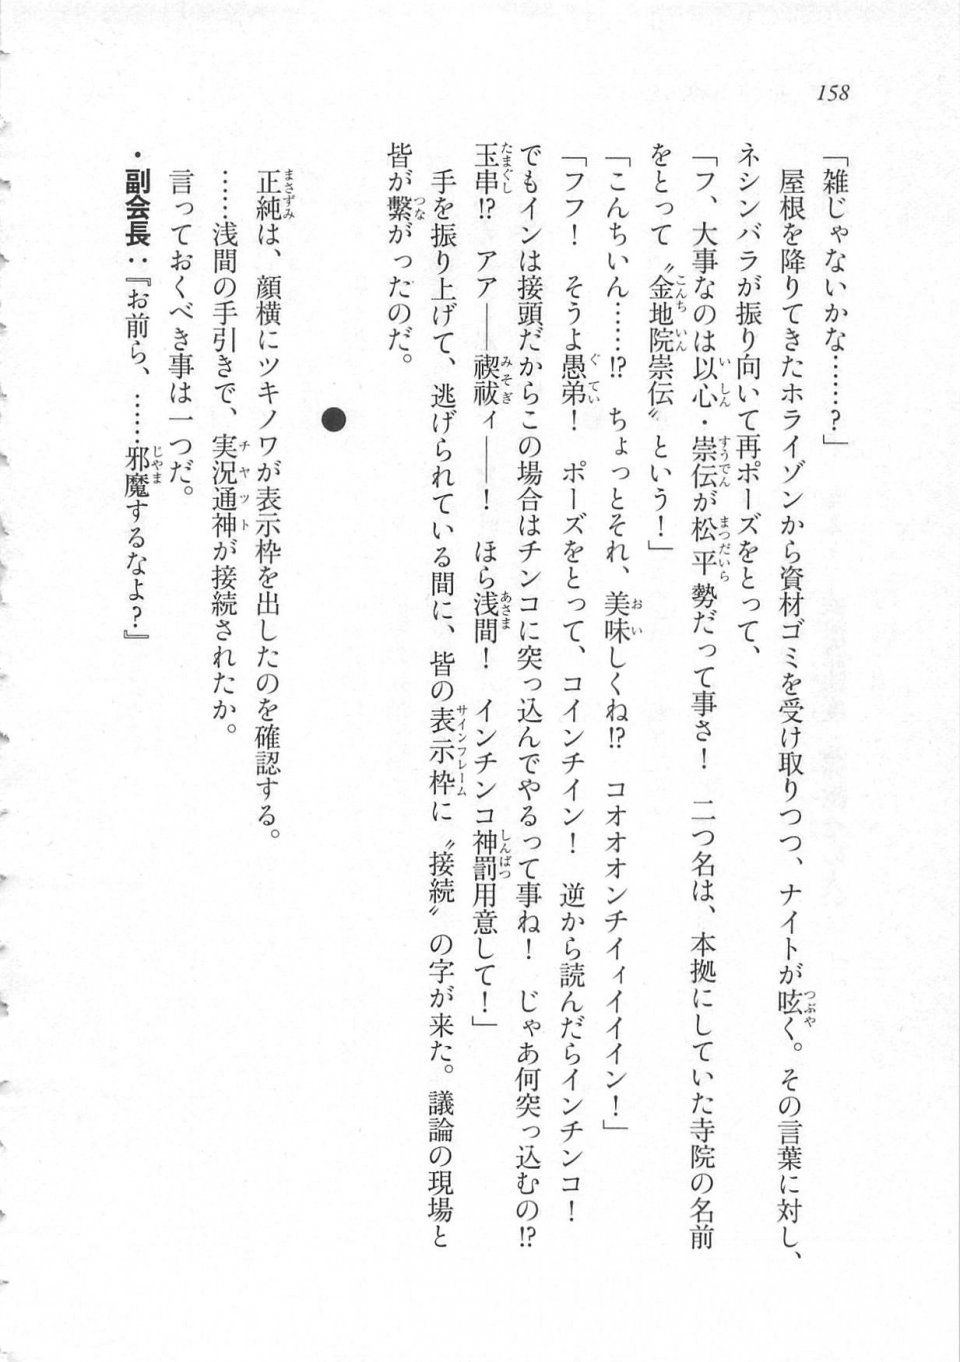 Kyoukai Senjou no Horizon LN Sidestory Vol 3 - Photo #162